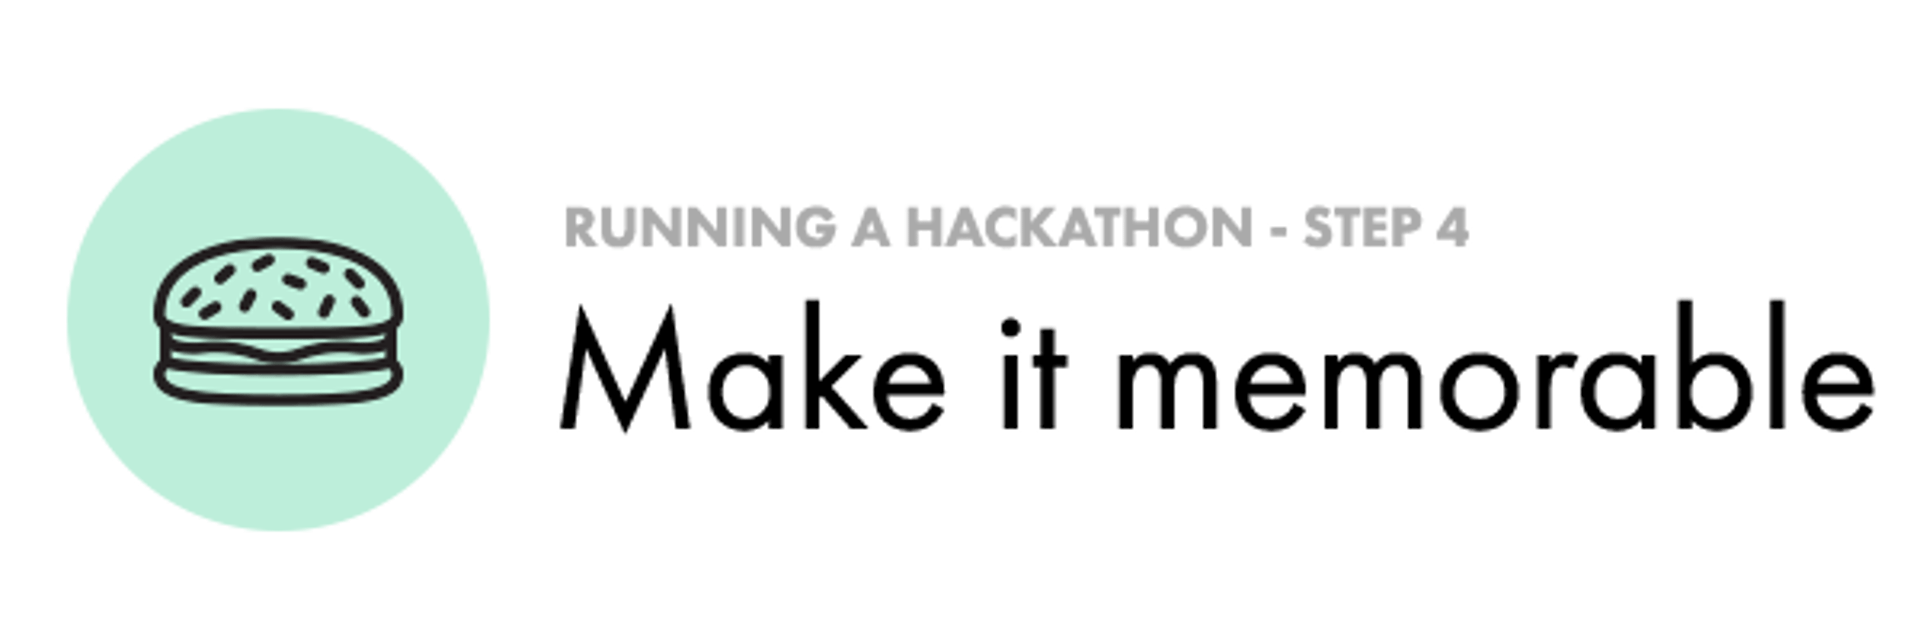 Make Hackathon Memorable